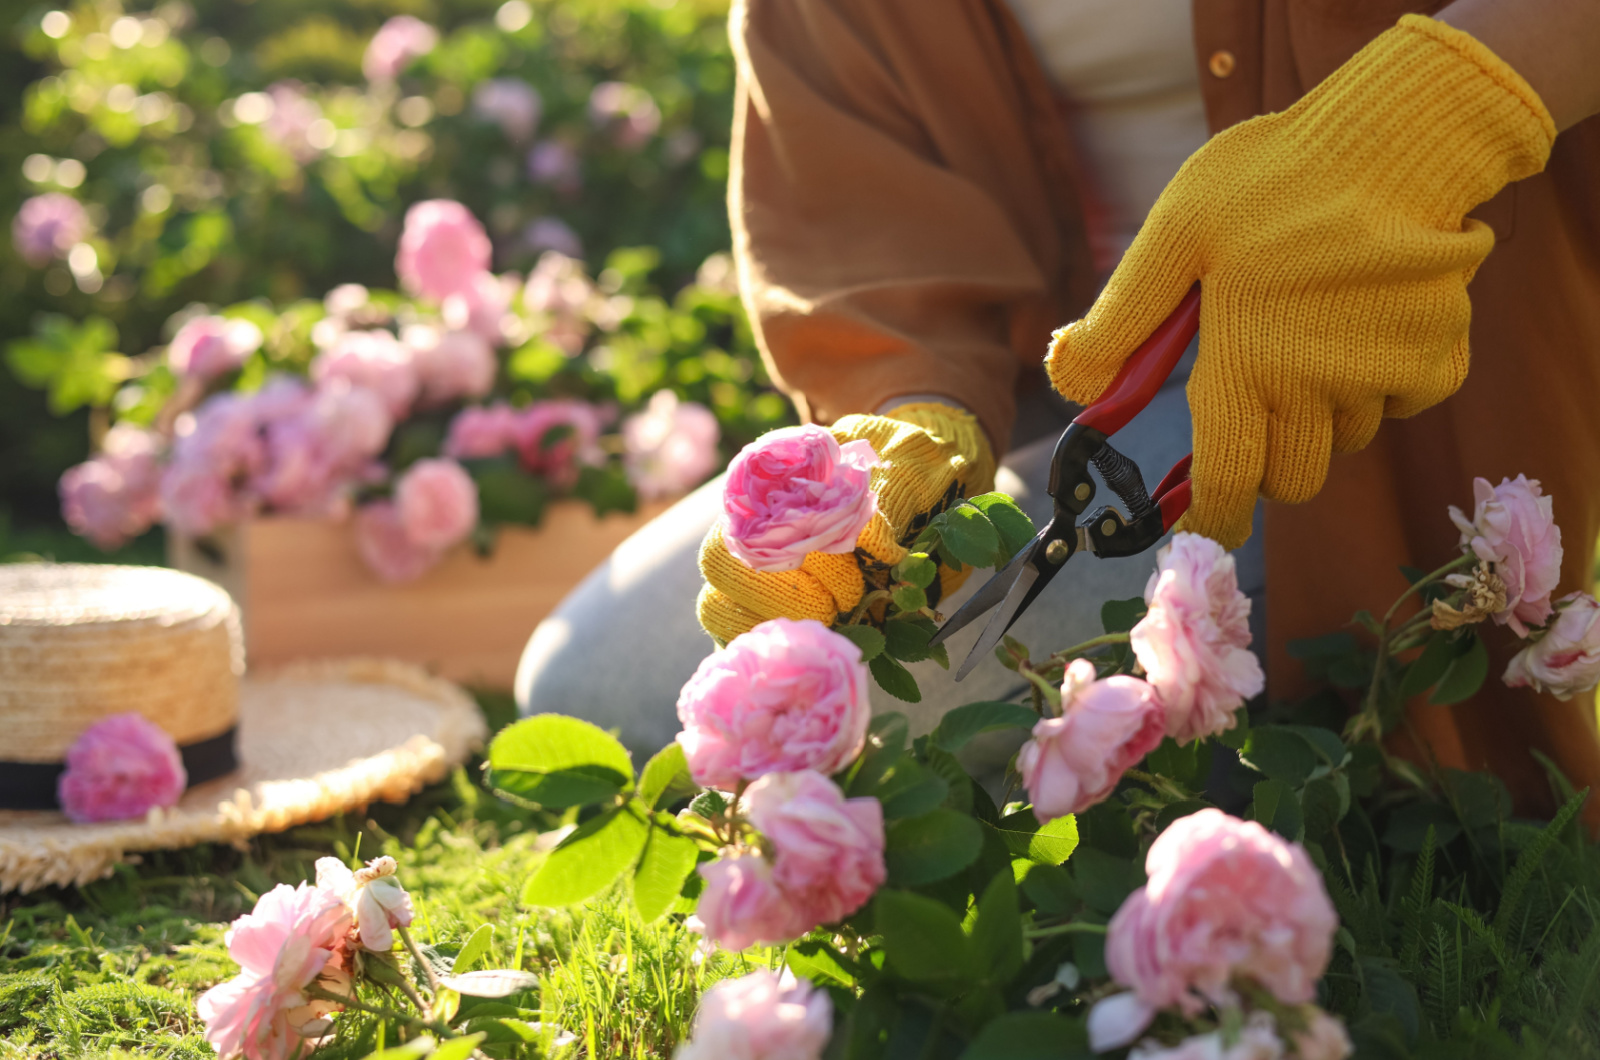 gardener pruning pink roses